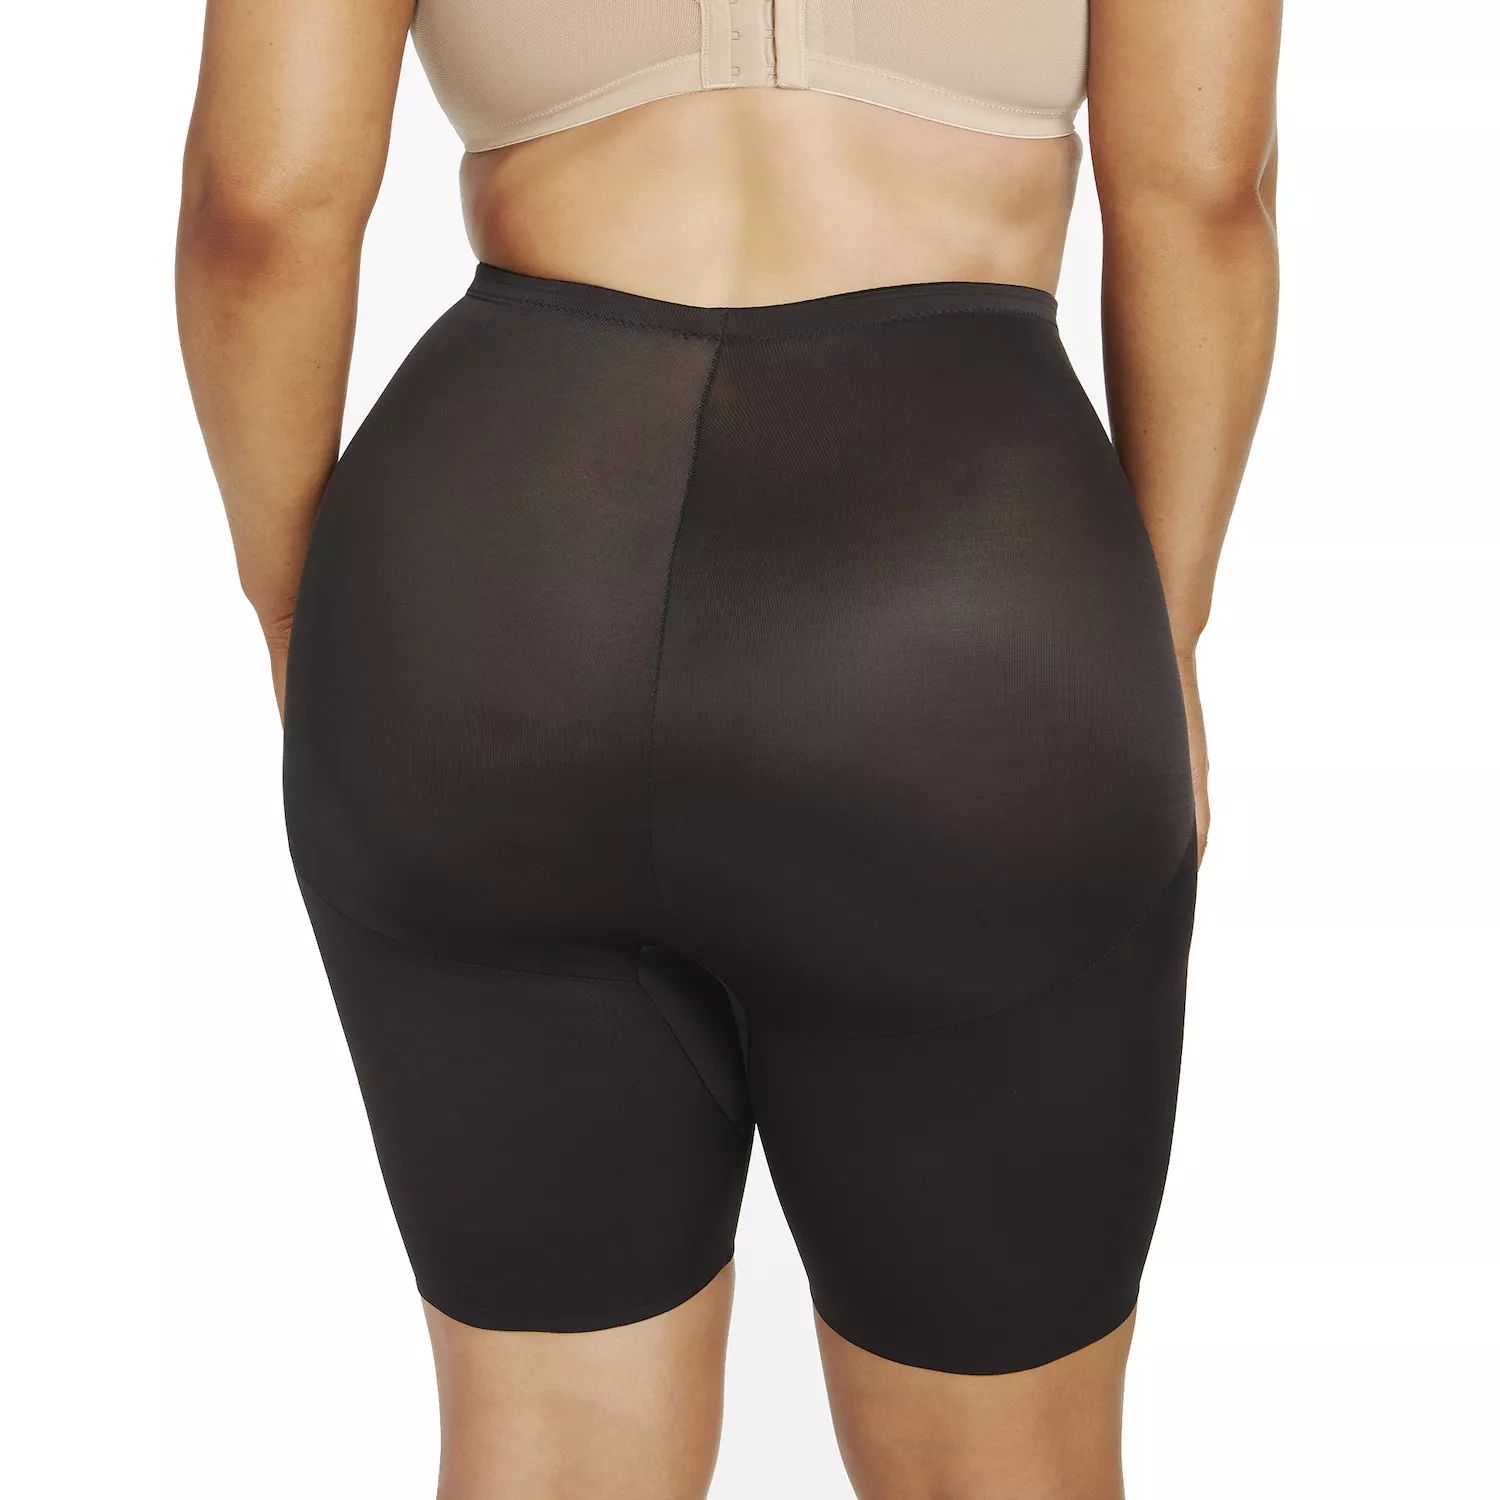 Корректирующее белье больших размеров Naomi & Nicole Велосипедные шорты Unbelevable Comfort 7786 Naomi & Nicole, черный